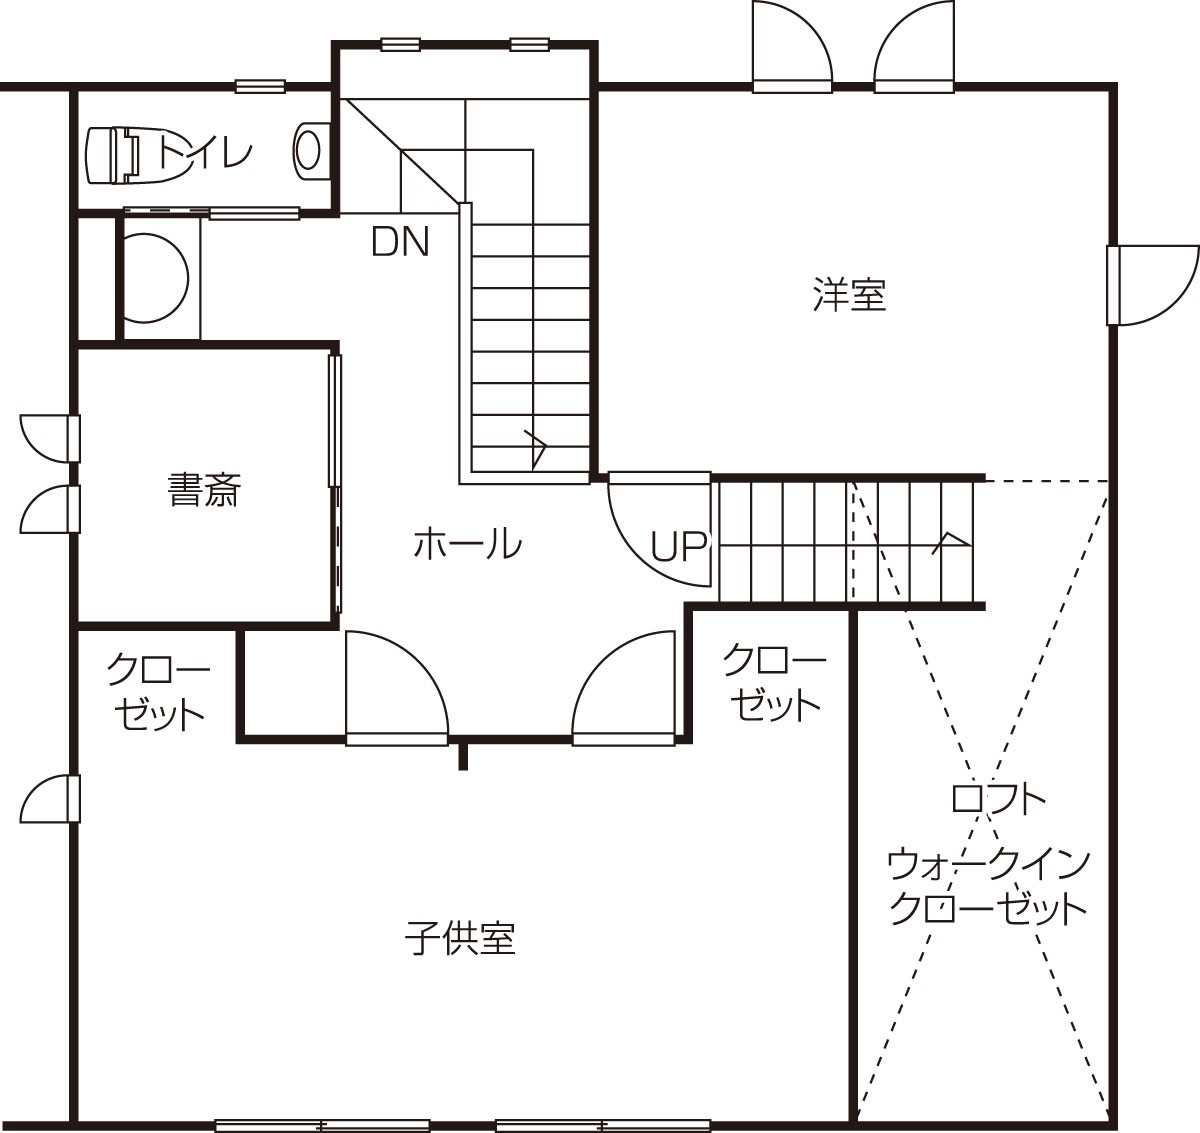 鳥取県境港市のおすすめ工務店「安達建築設計事務所」による新築事例の２階間取り図